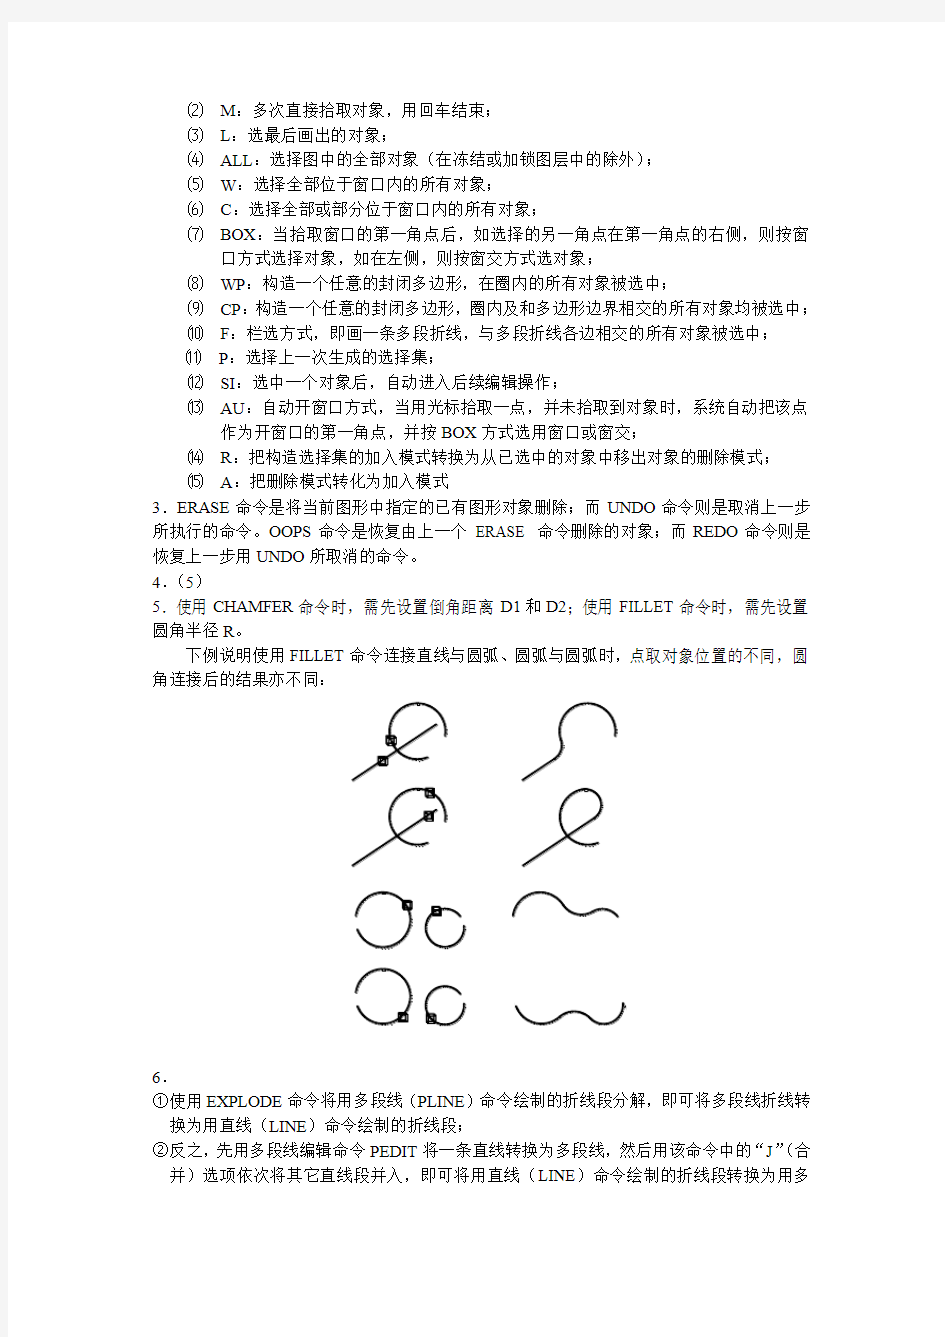 《AutoCAD2008中文版应用基础》思考题答案